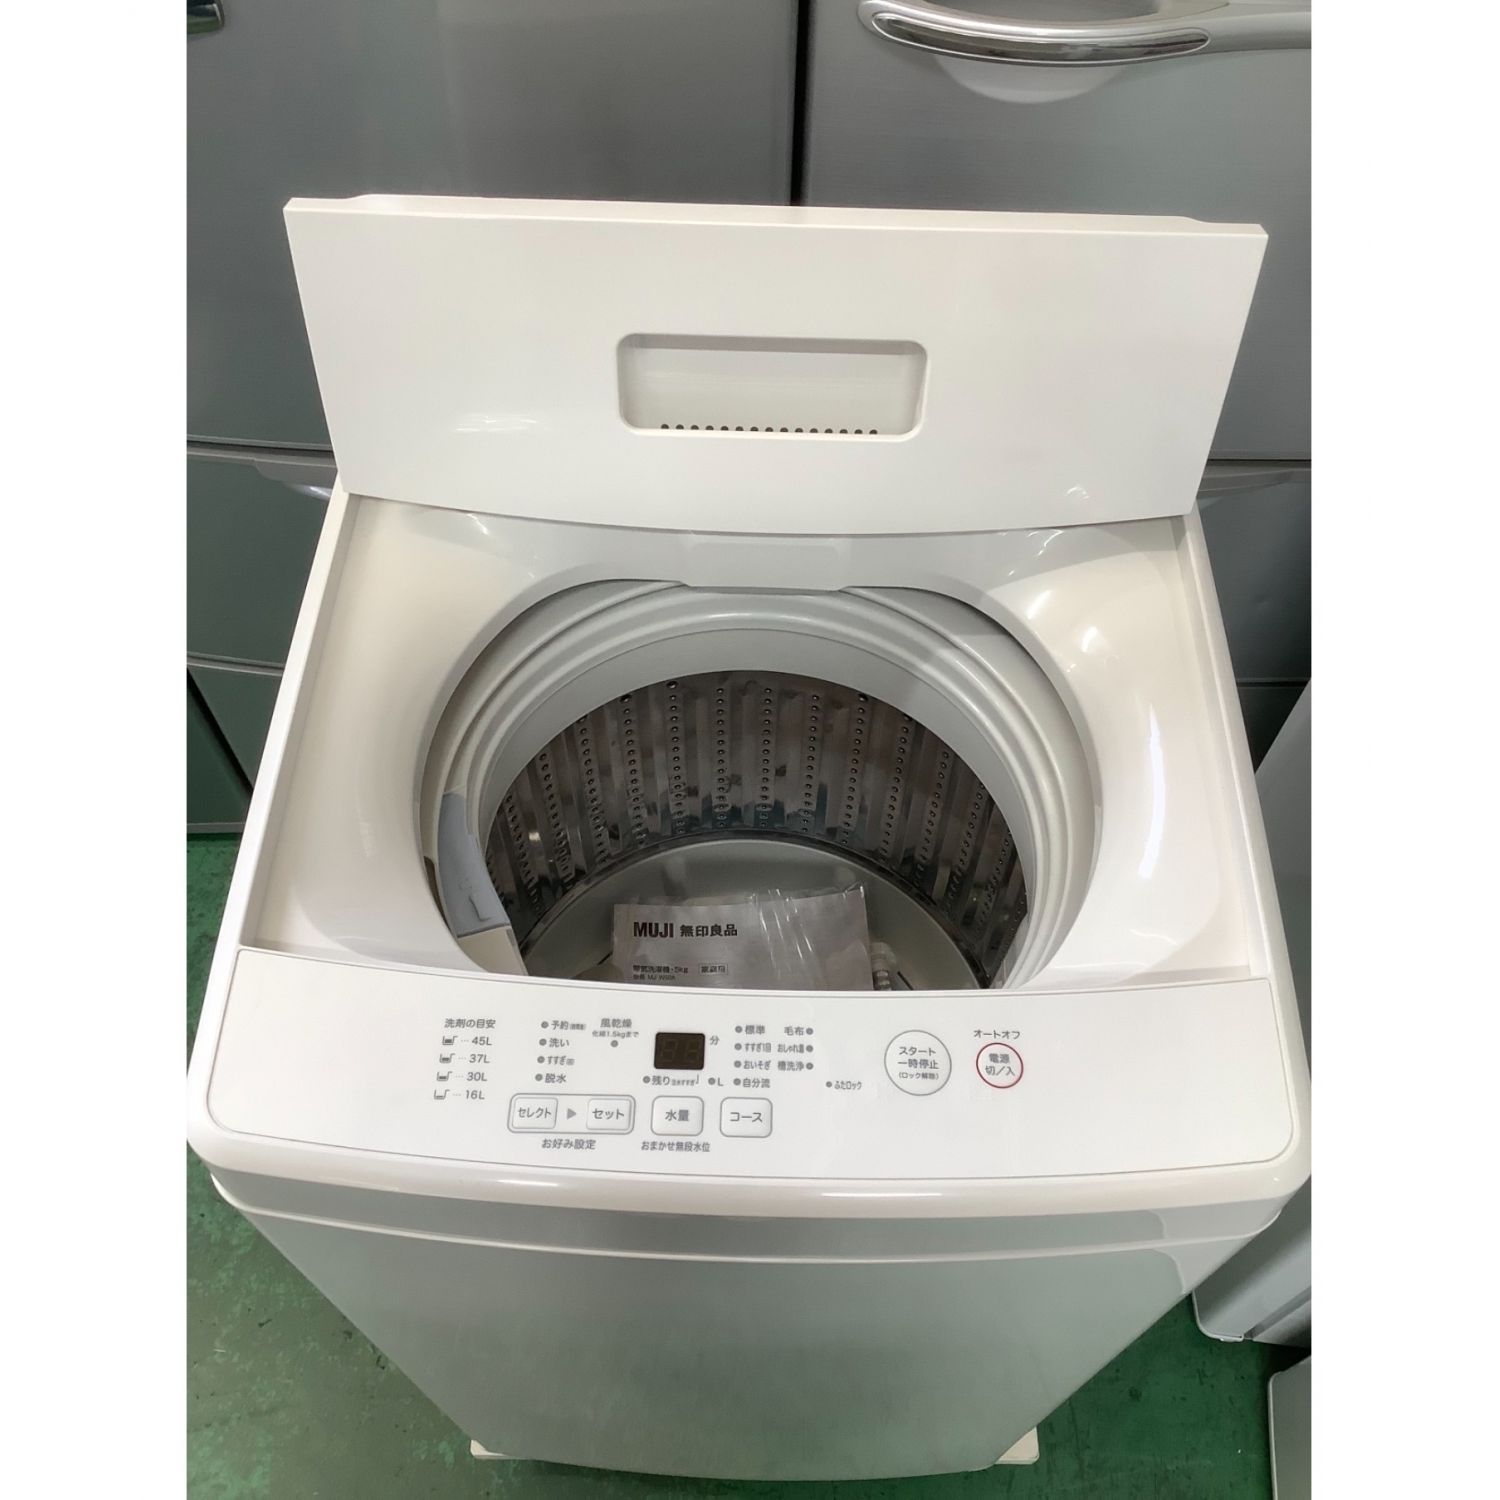 無印良品 (ムジルシリョウヒン) 全自動洗濯機 5.0kg MJ-W50A 2019年製 